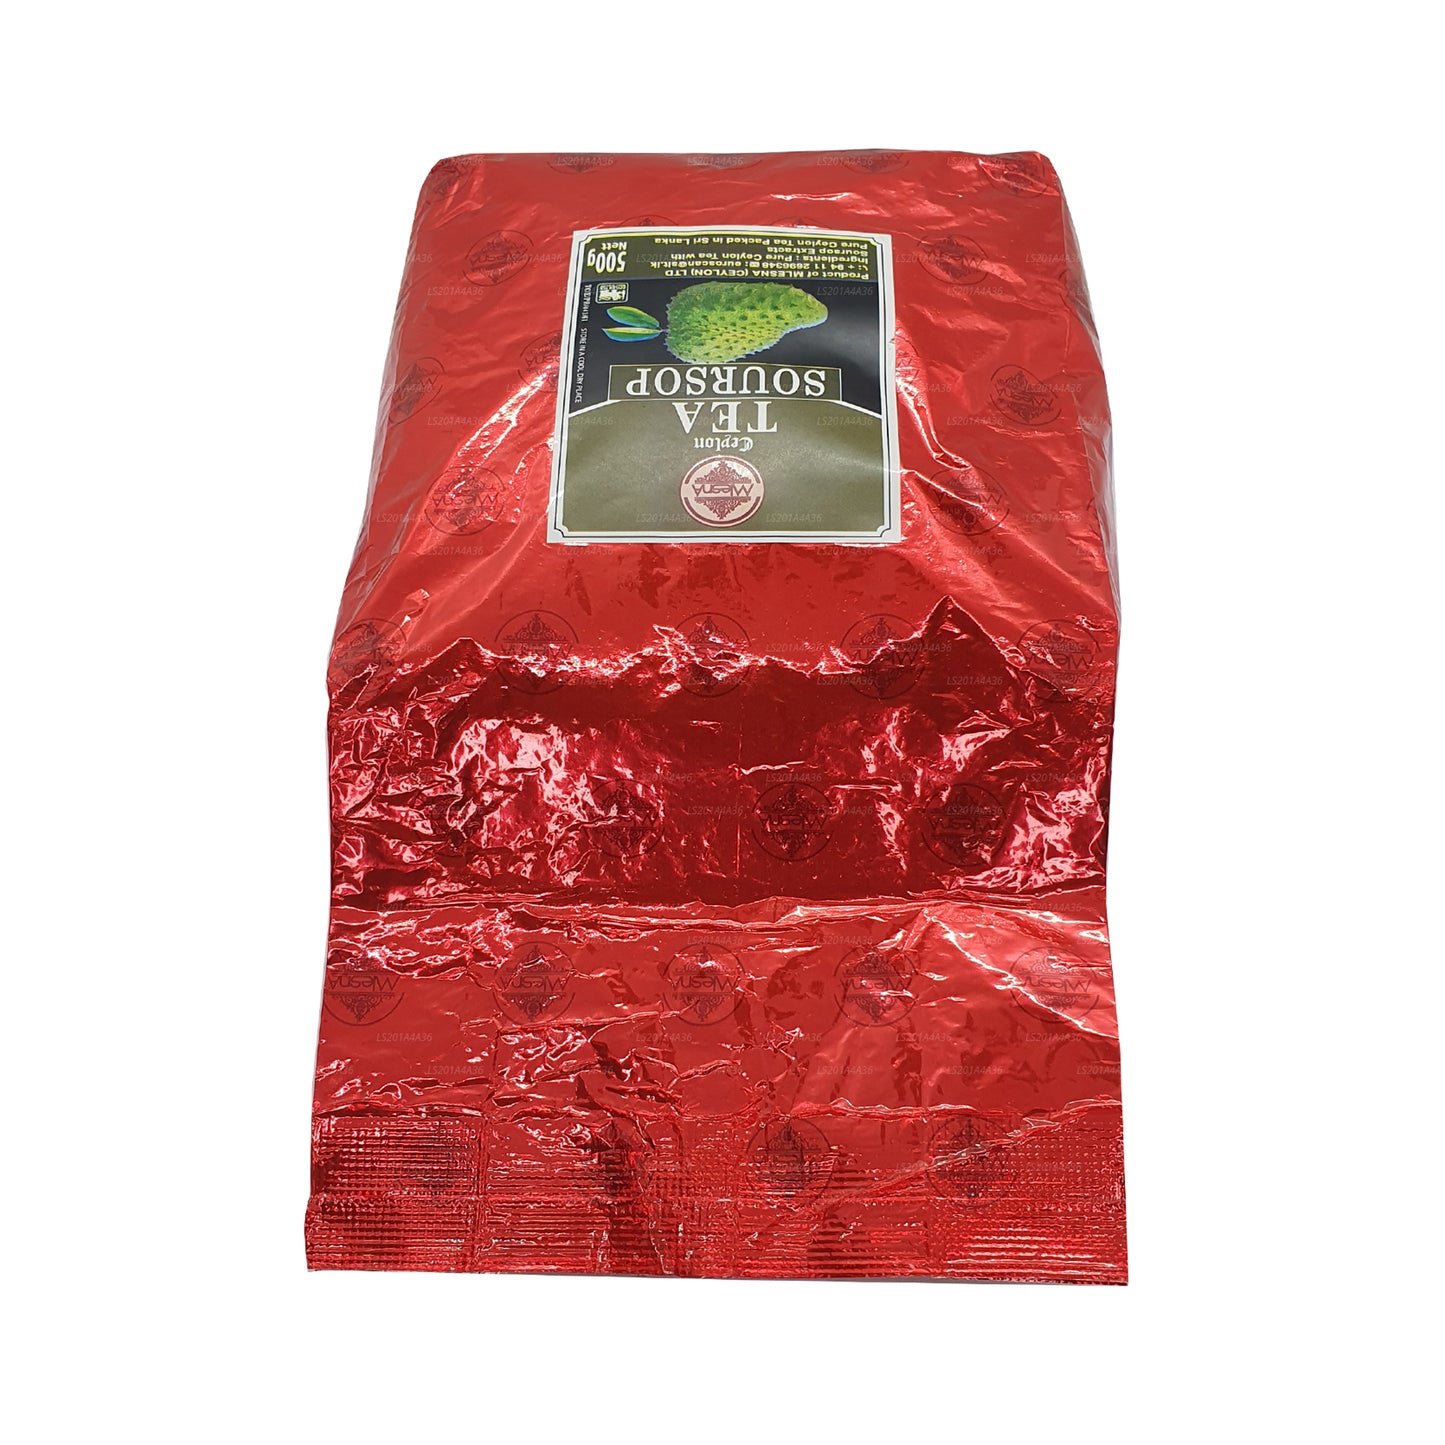 Tè nero Mlesna Ceylon Soursop (500g)